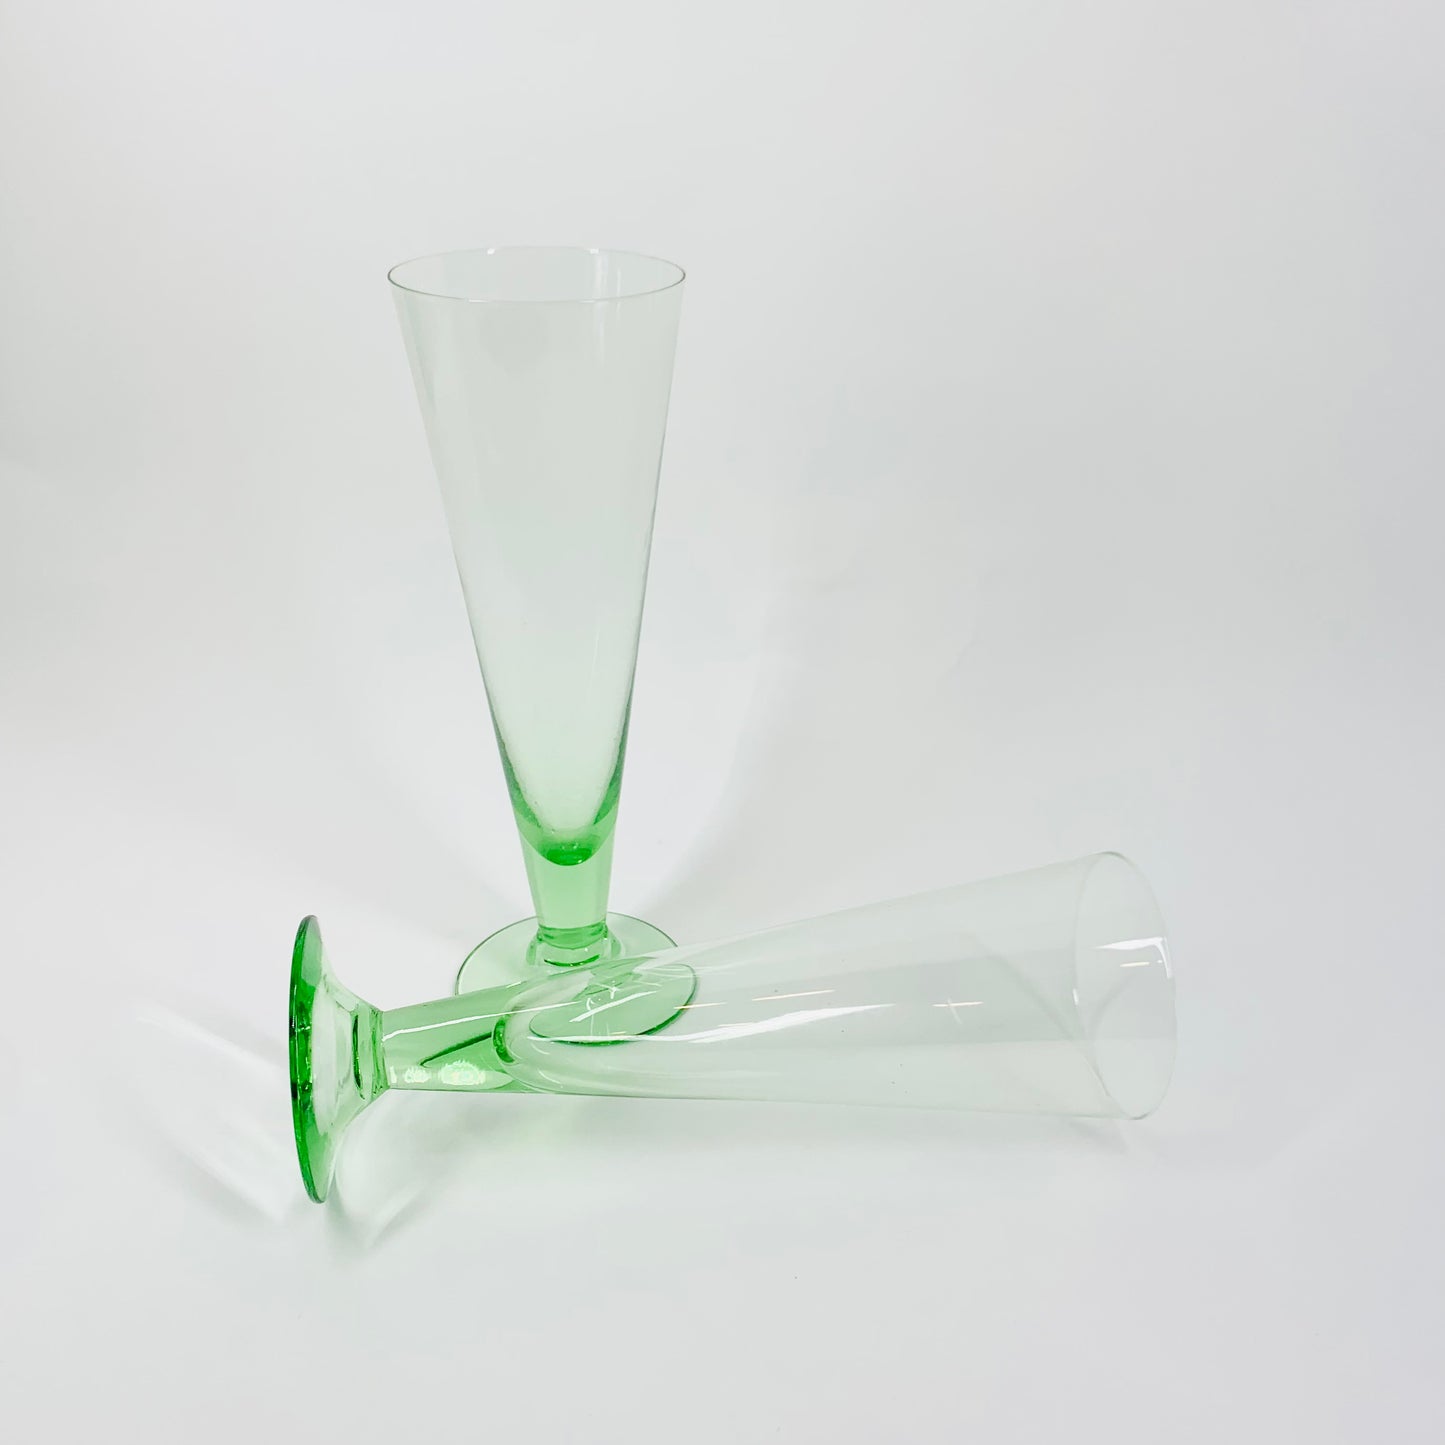 Rare MCM green glass parfait/champagne flutes